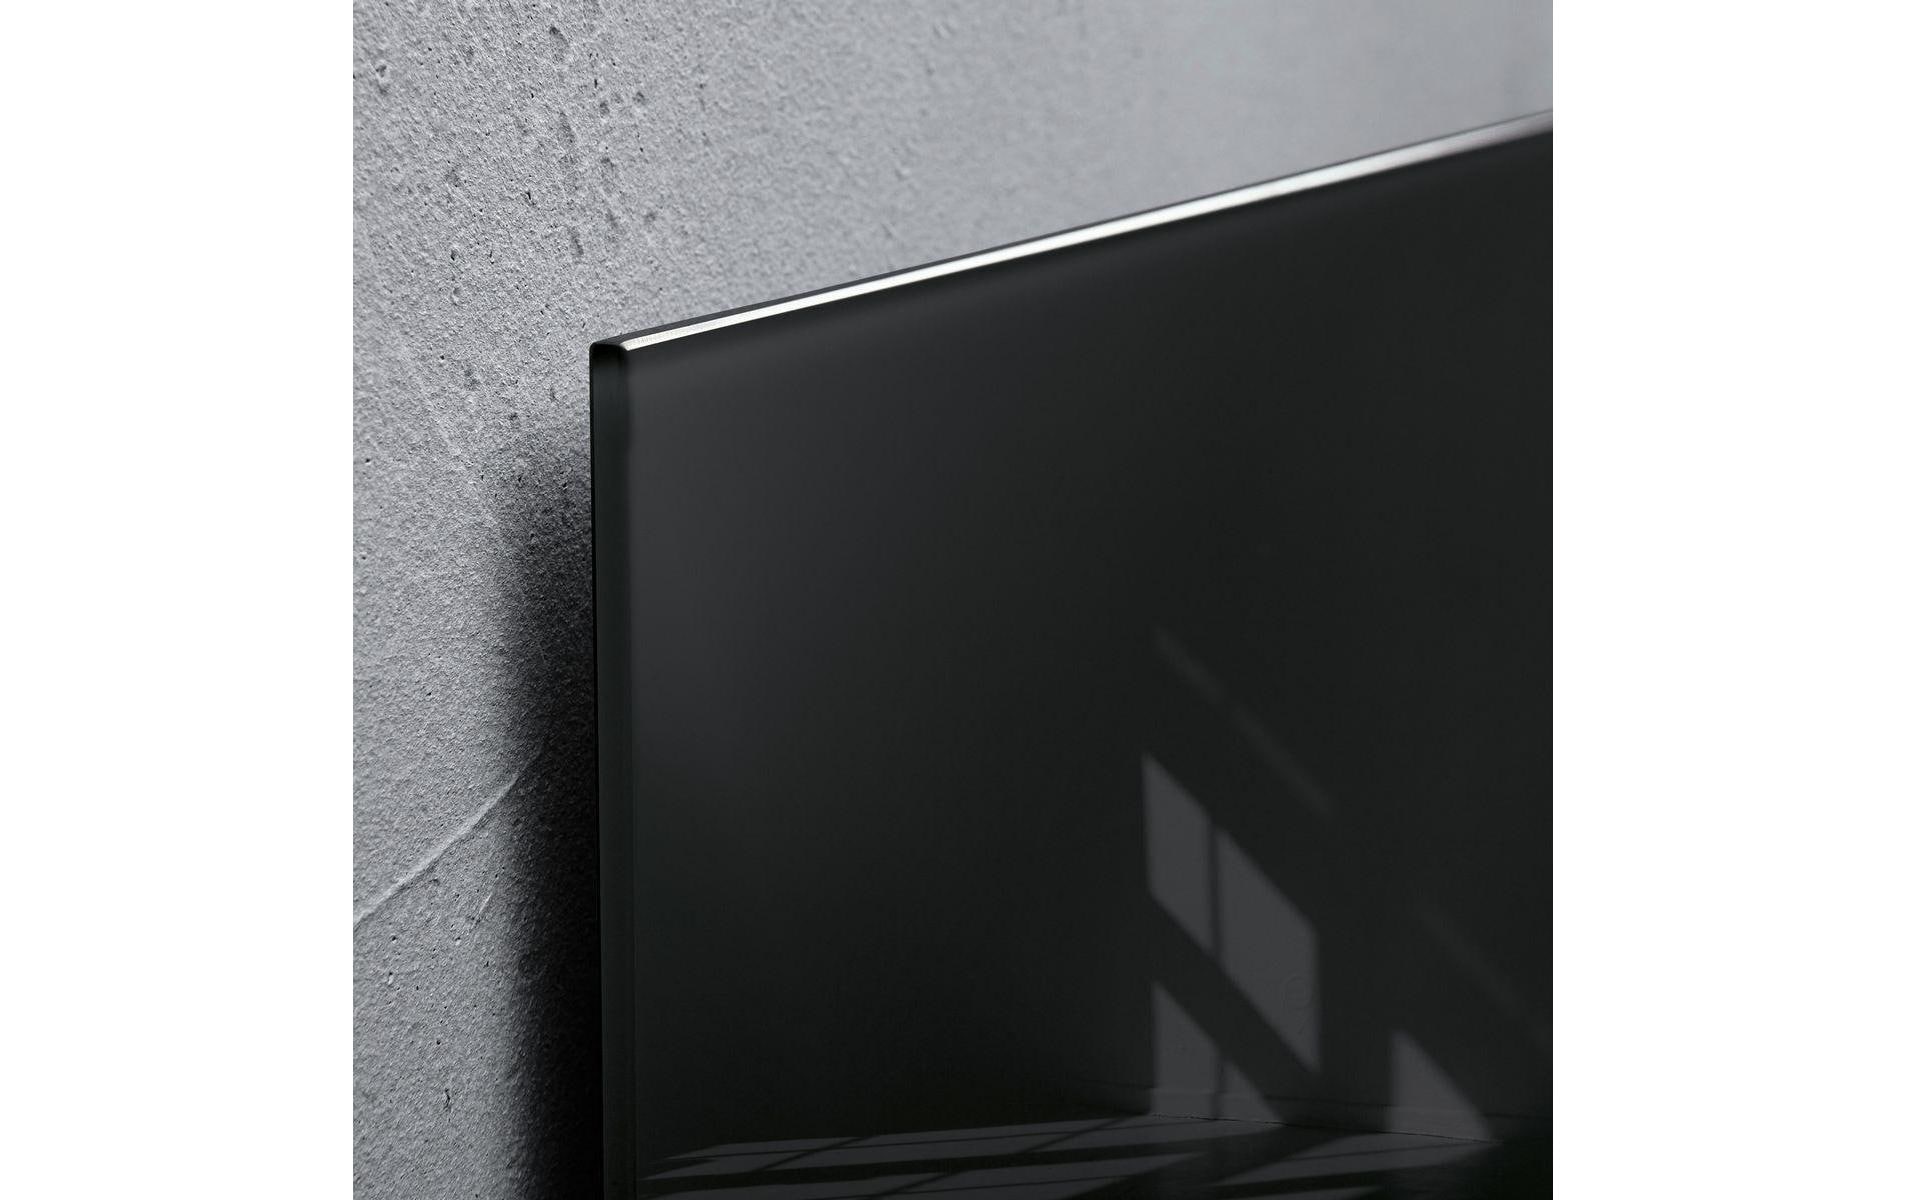 Sigel Magnethaftendes Glassboard Artverum 40 cm x 60 cm, Schwarz